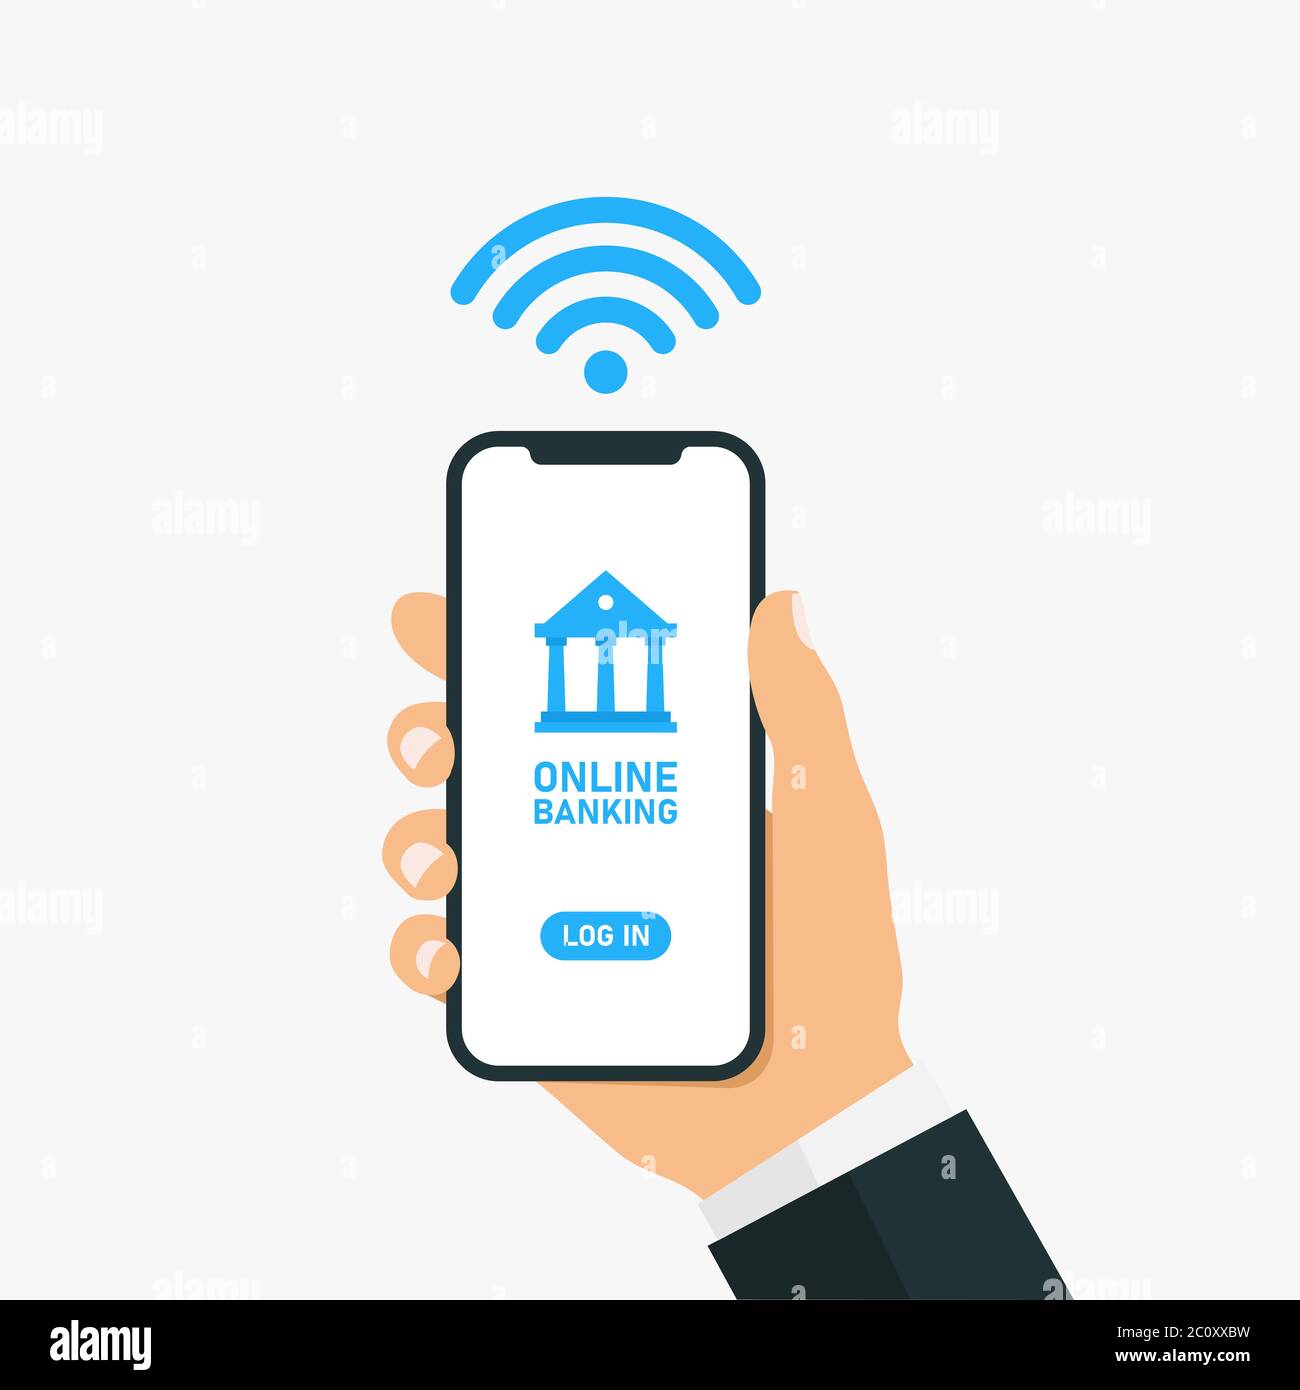 Illustration eines Geschäftsmannes, der ein Smartphone hält, um Transaktionen mit Online-Banking durchzuführen. Die Verwendung von Online-Banking-Software zu tun Finanzen handeln. Stock Vektor